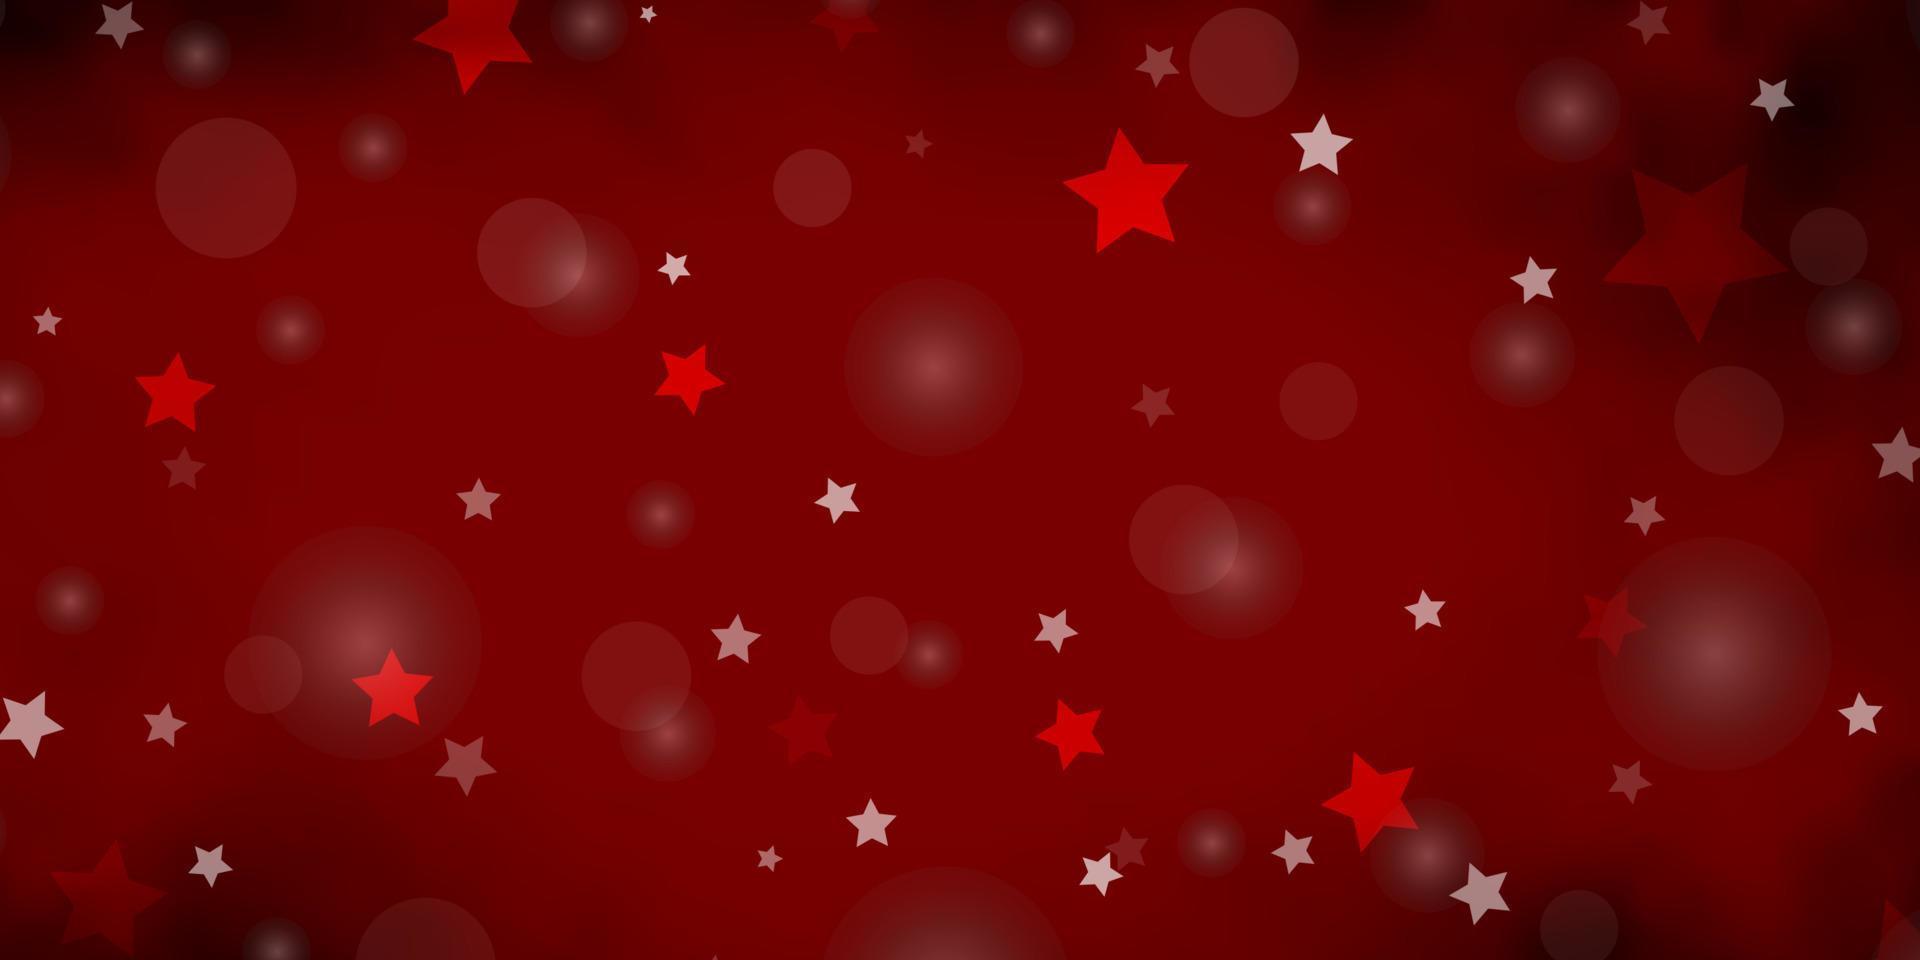 fond de vecteur rouge foncé avec des cercles, des étoiles.